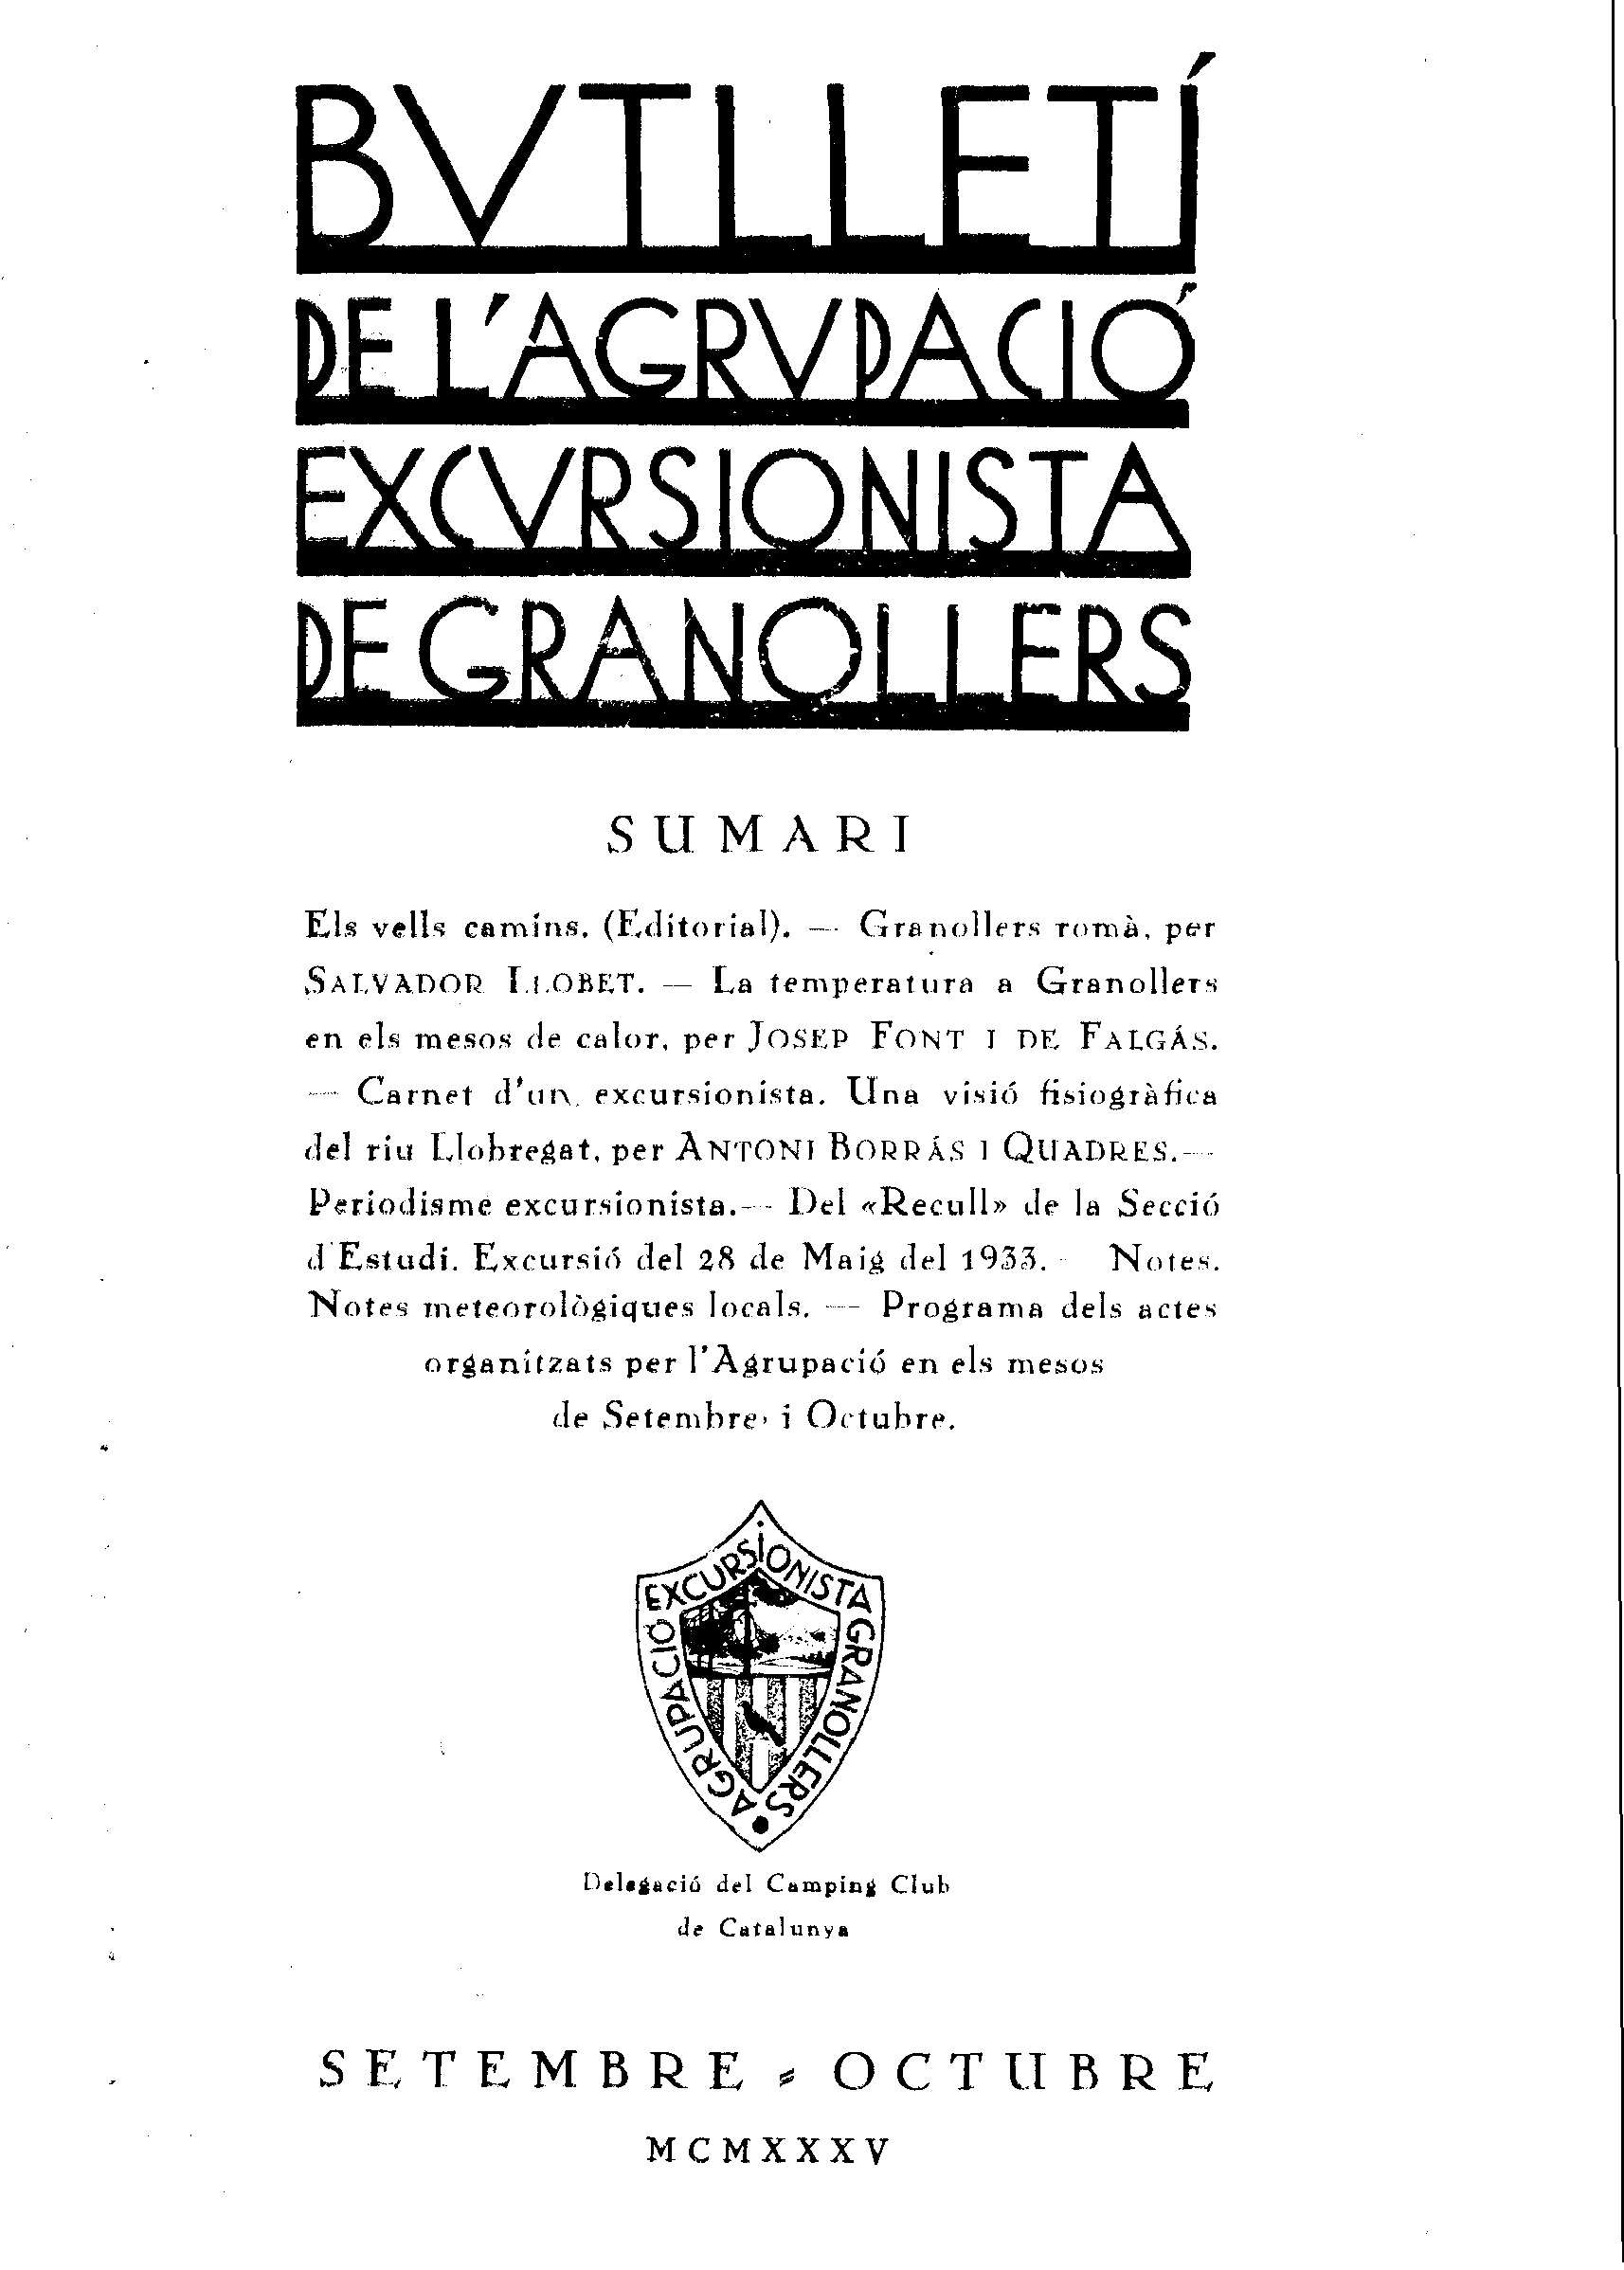 Butlletí de l'Agrupació Excursionista de Granollers, 1/9/1935 [Exemplar]